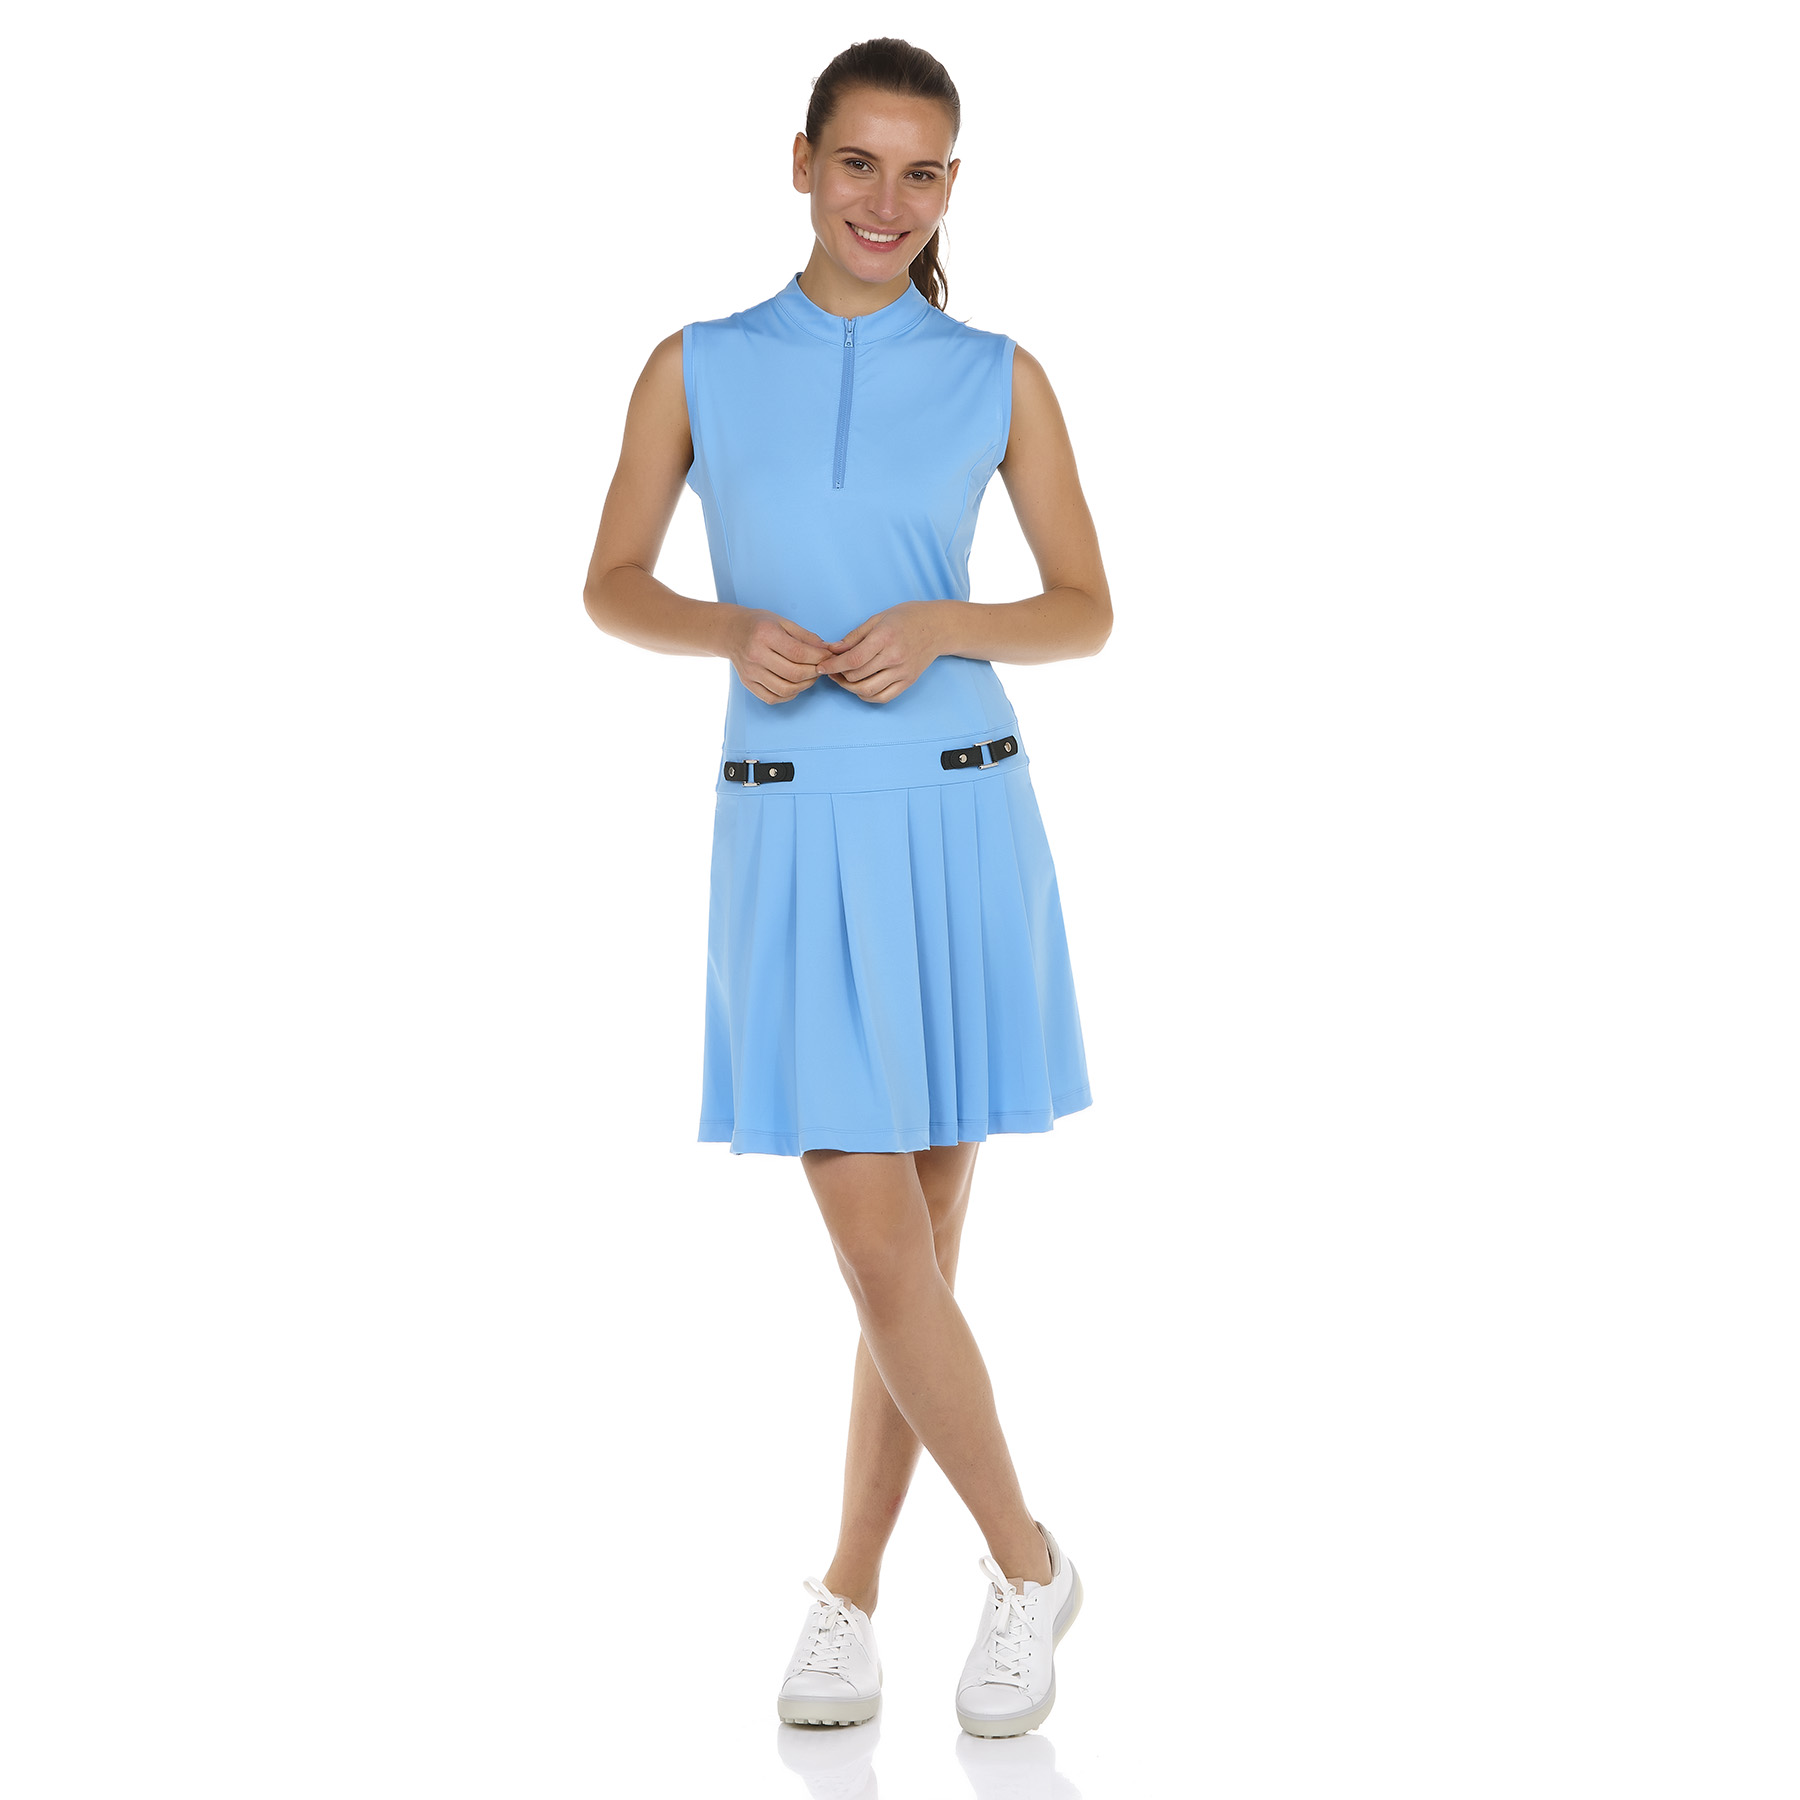 Valiente ärmelloses Kleid in hellblau online kaufen